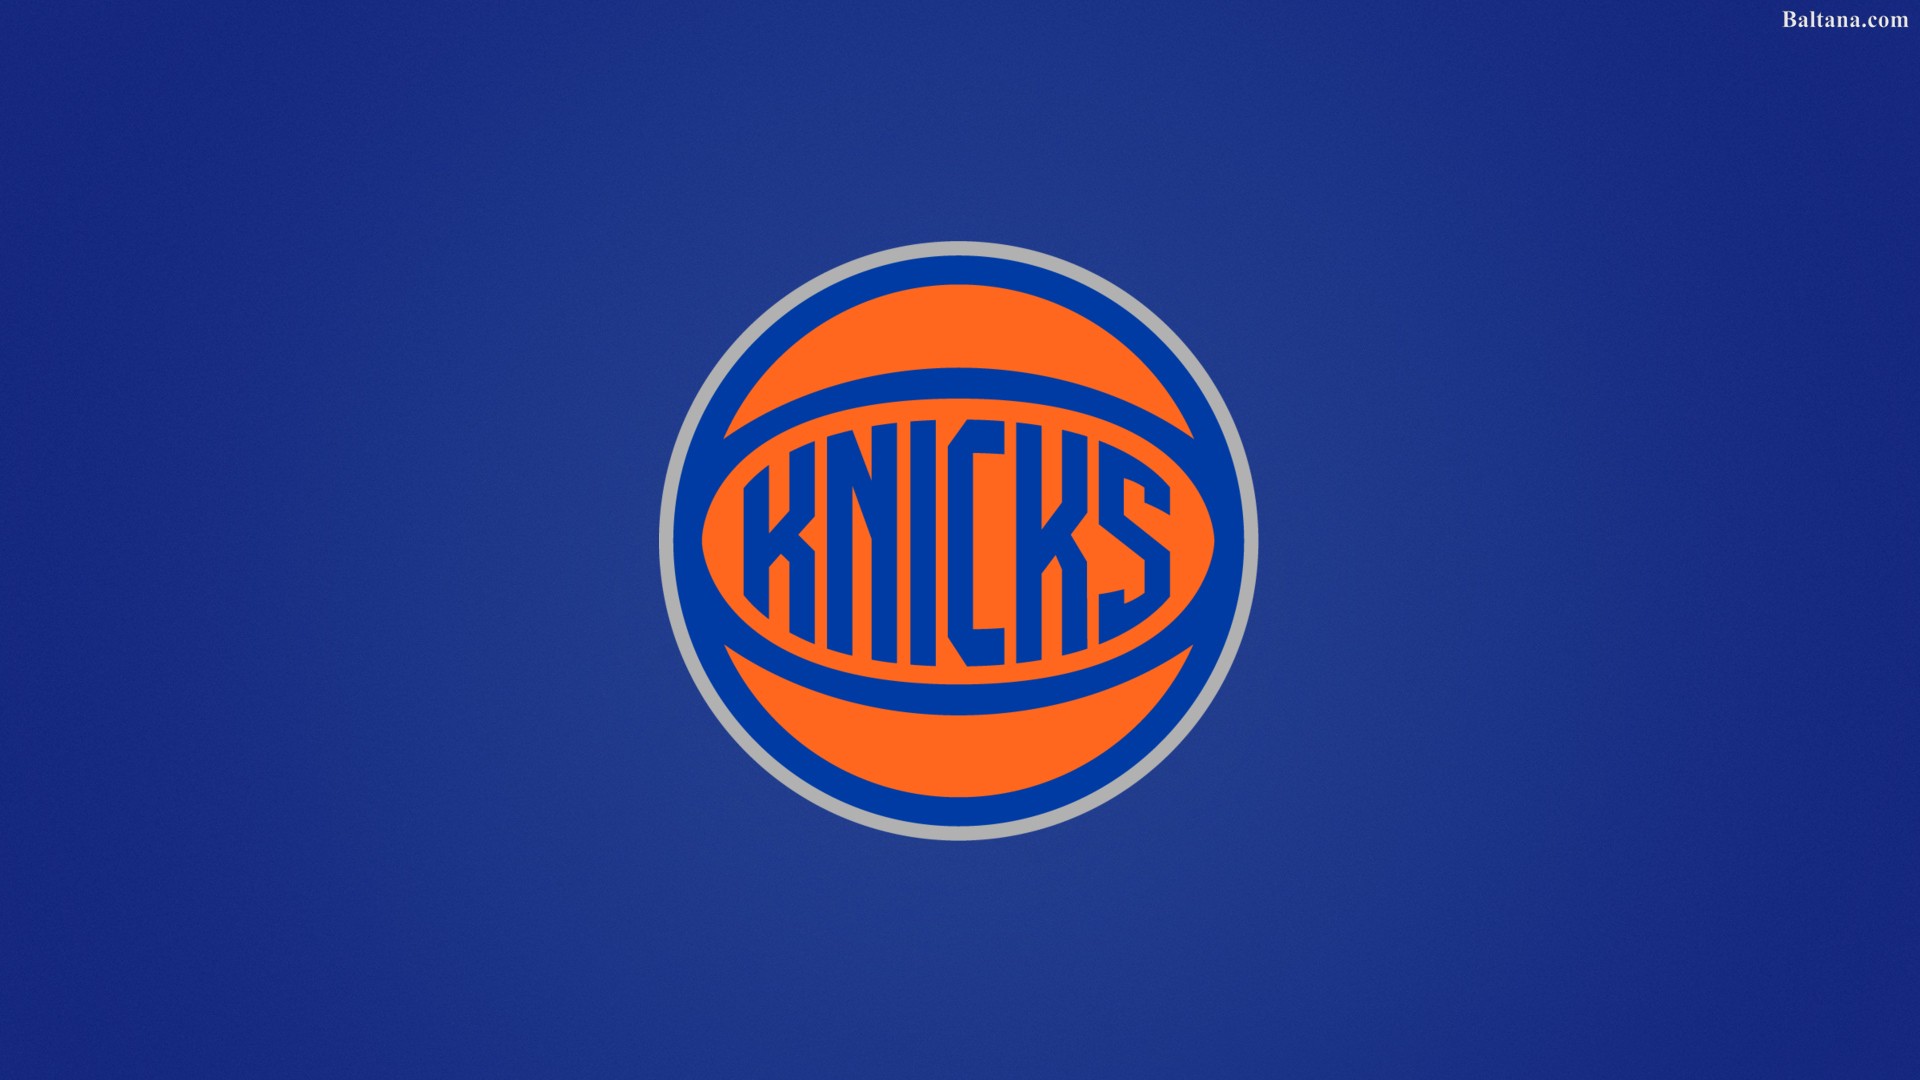 New York Knicks Image Festival Wallpaper